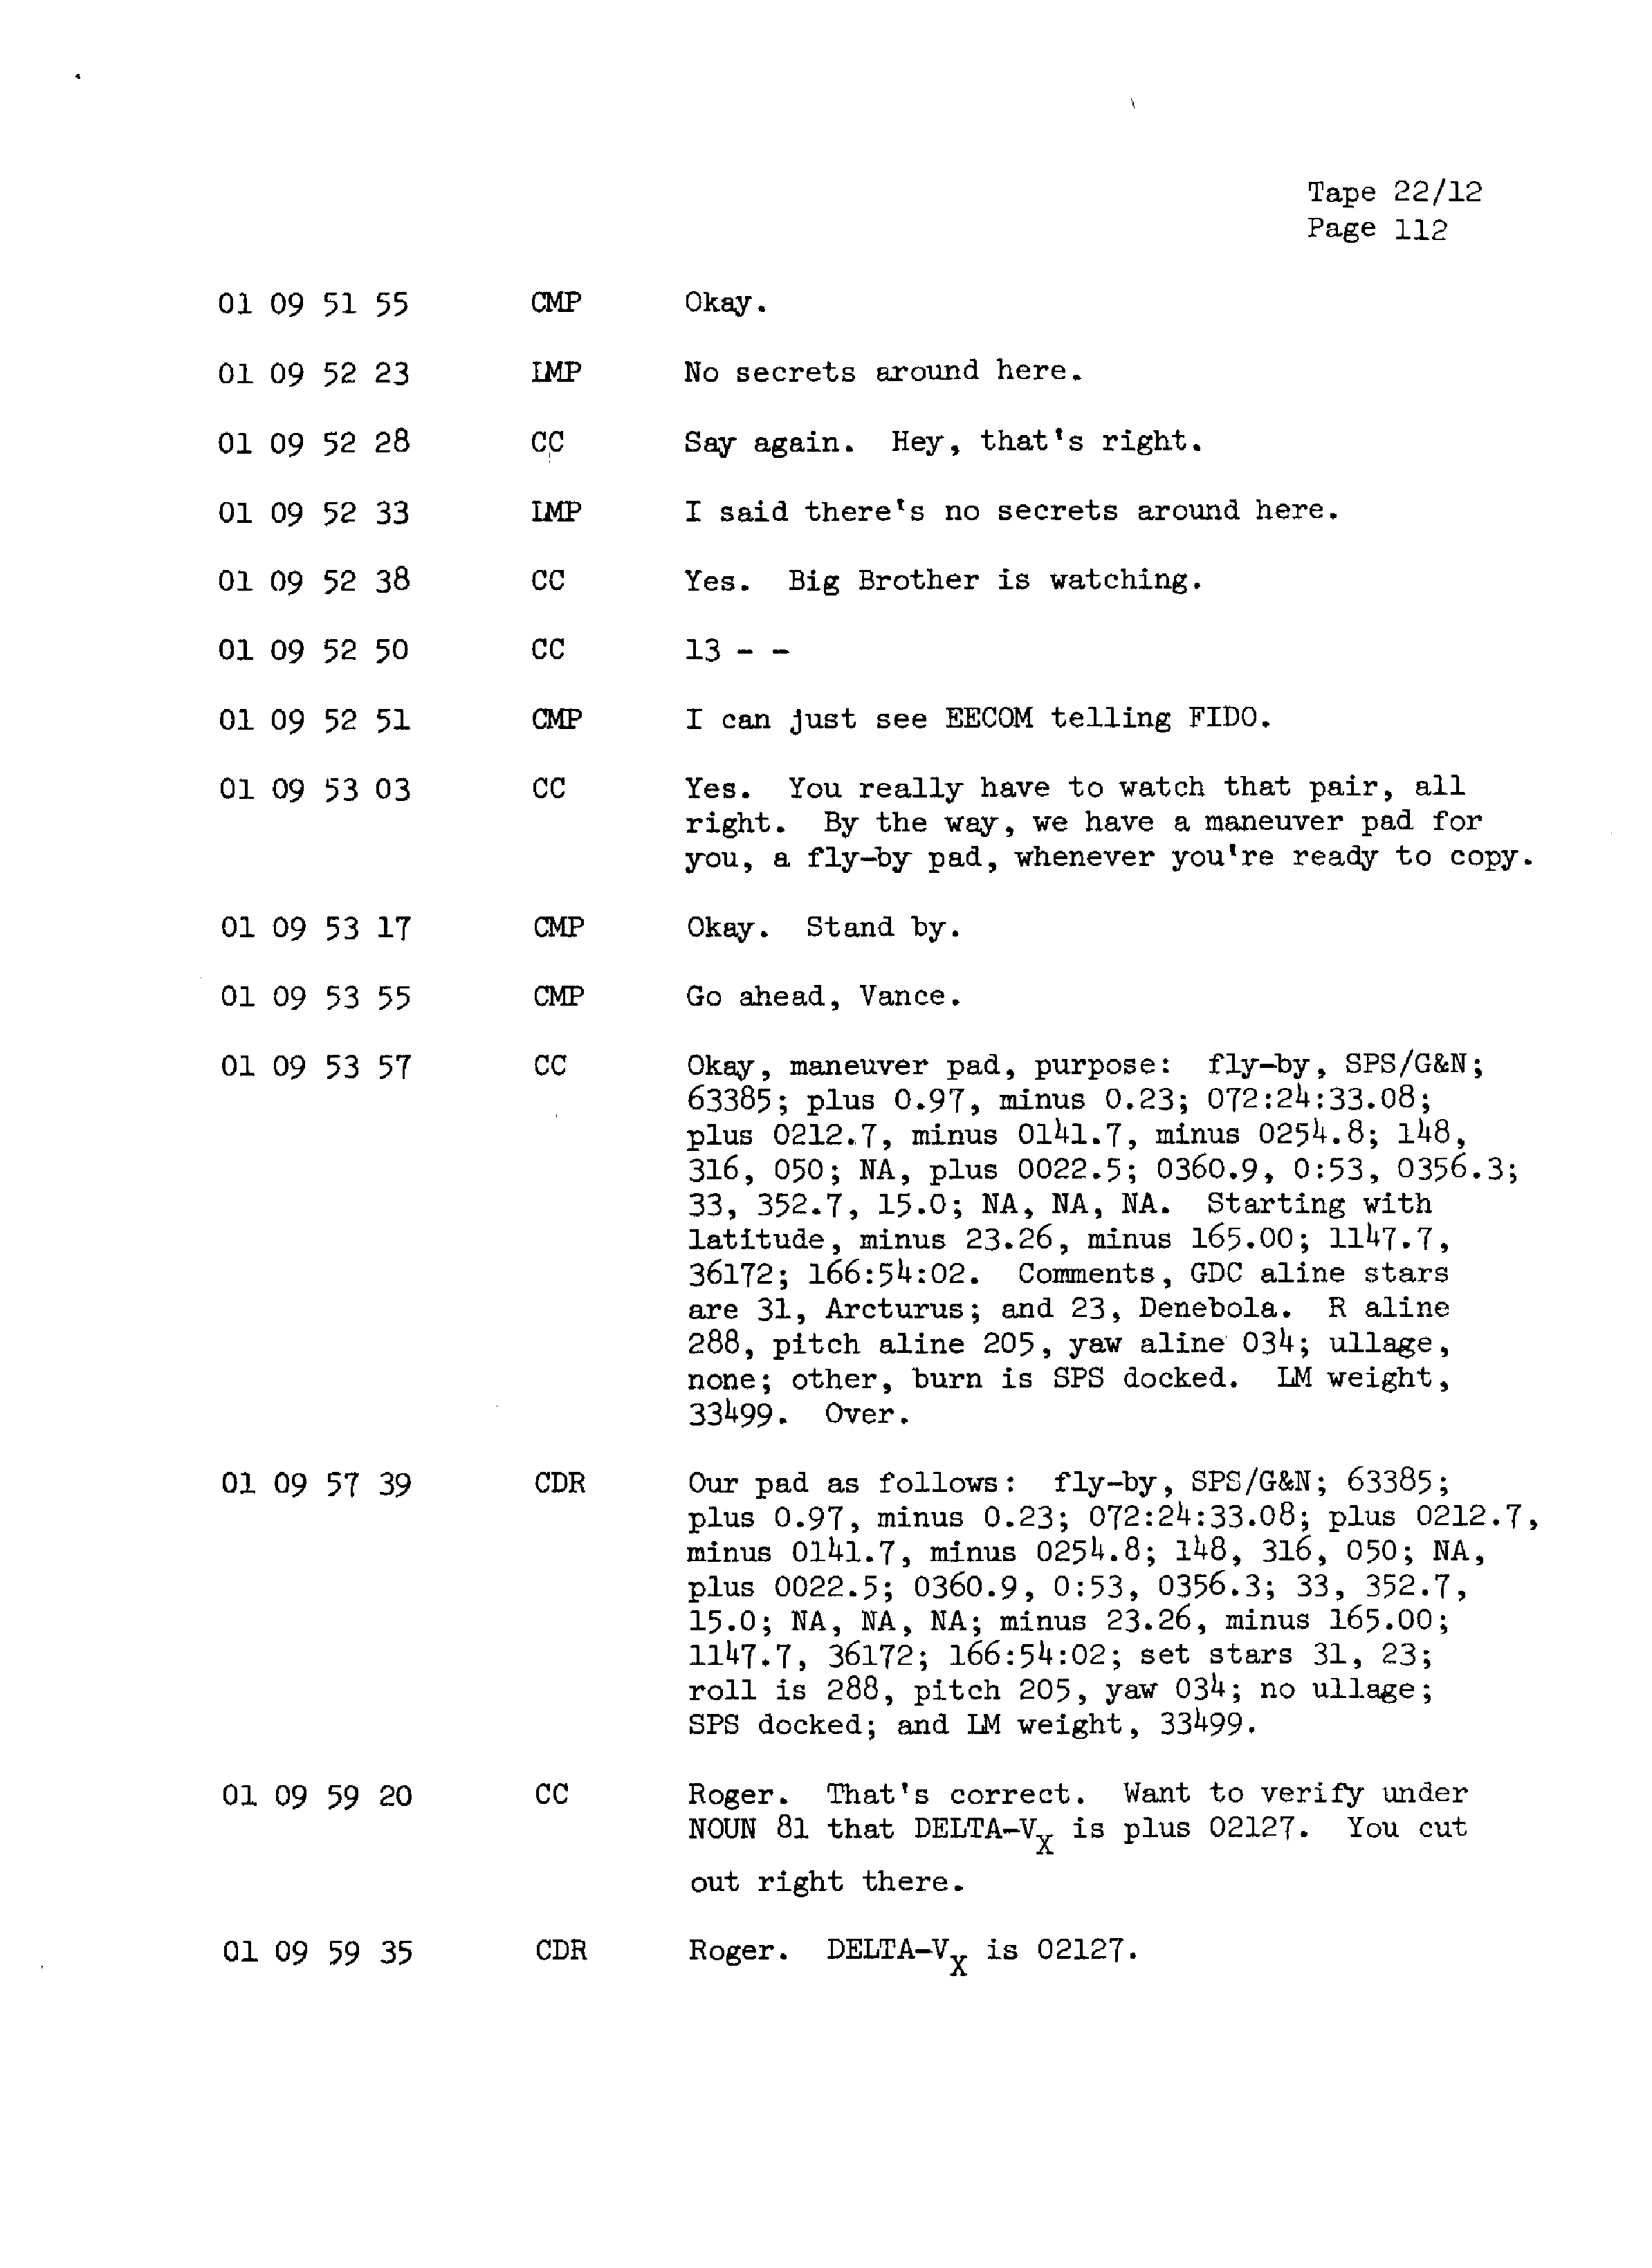 Page 119 of Apollo 13’s original transcript